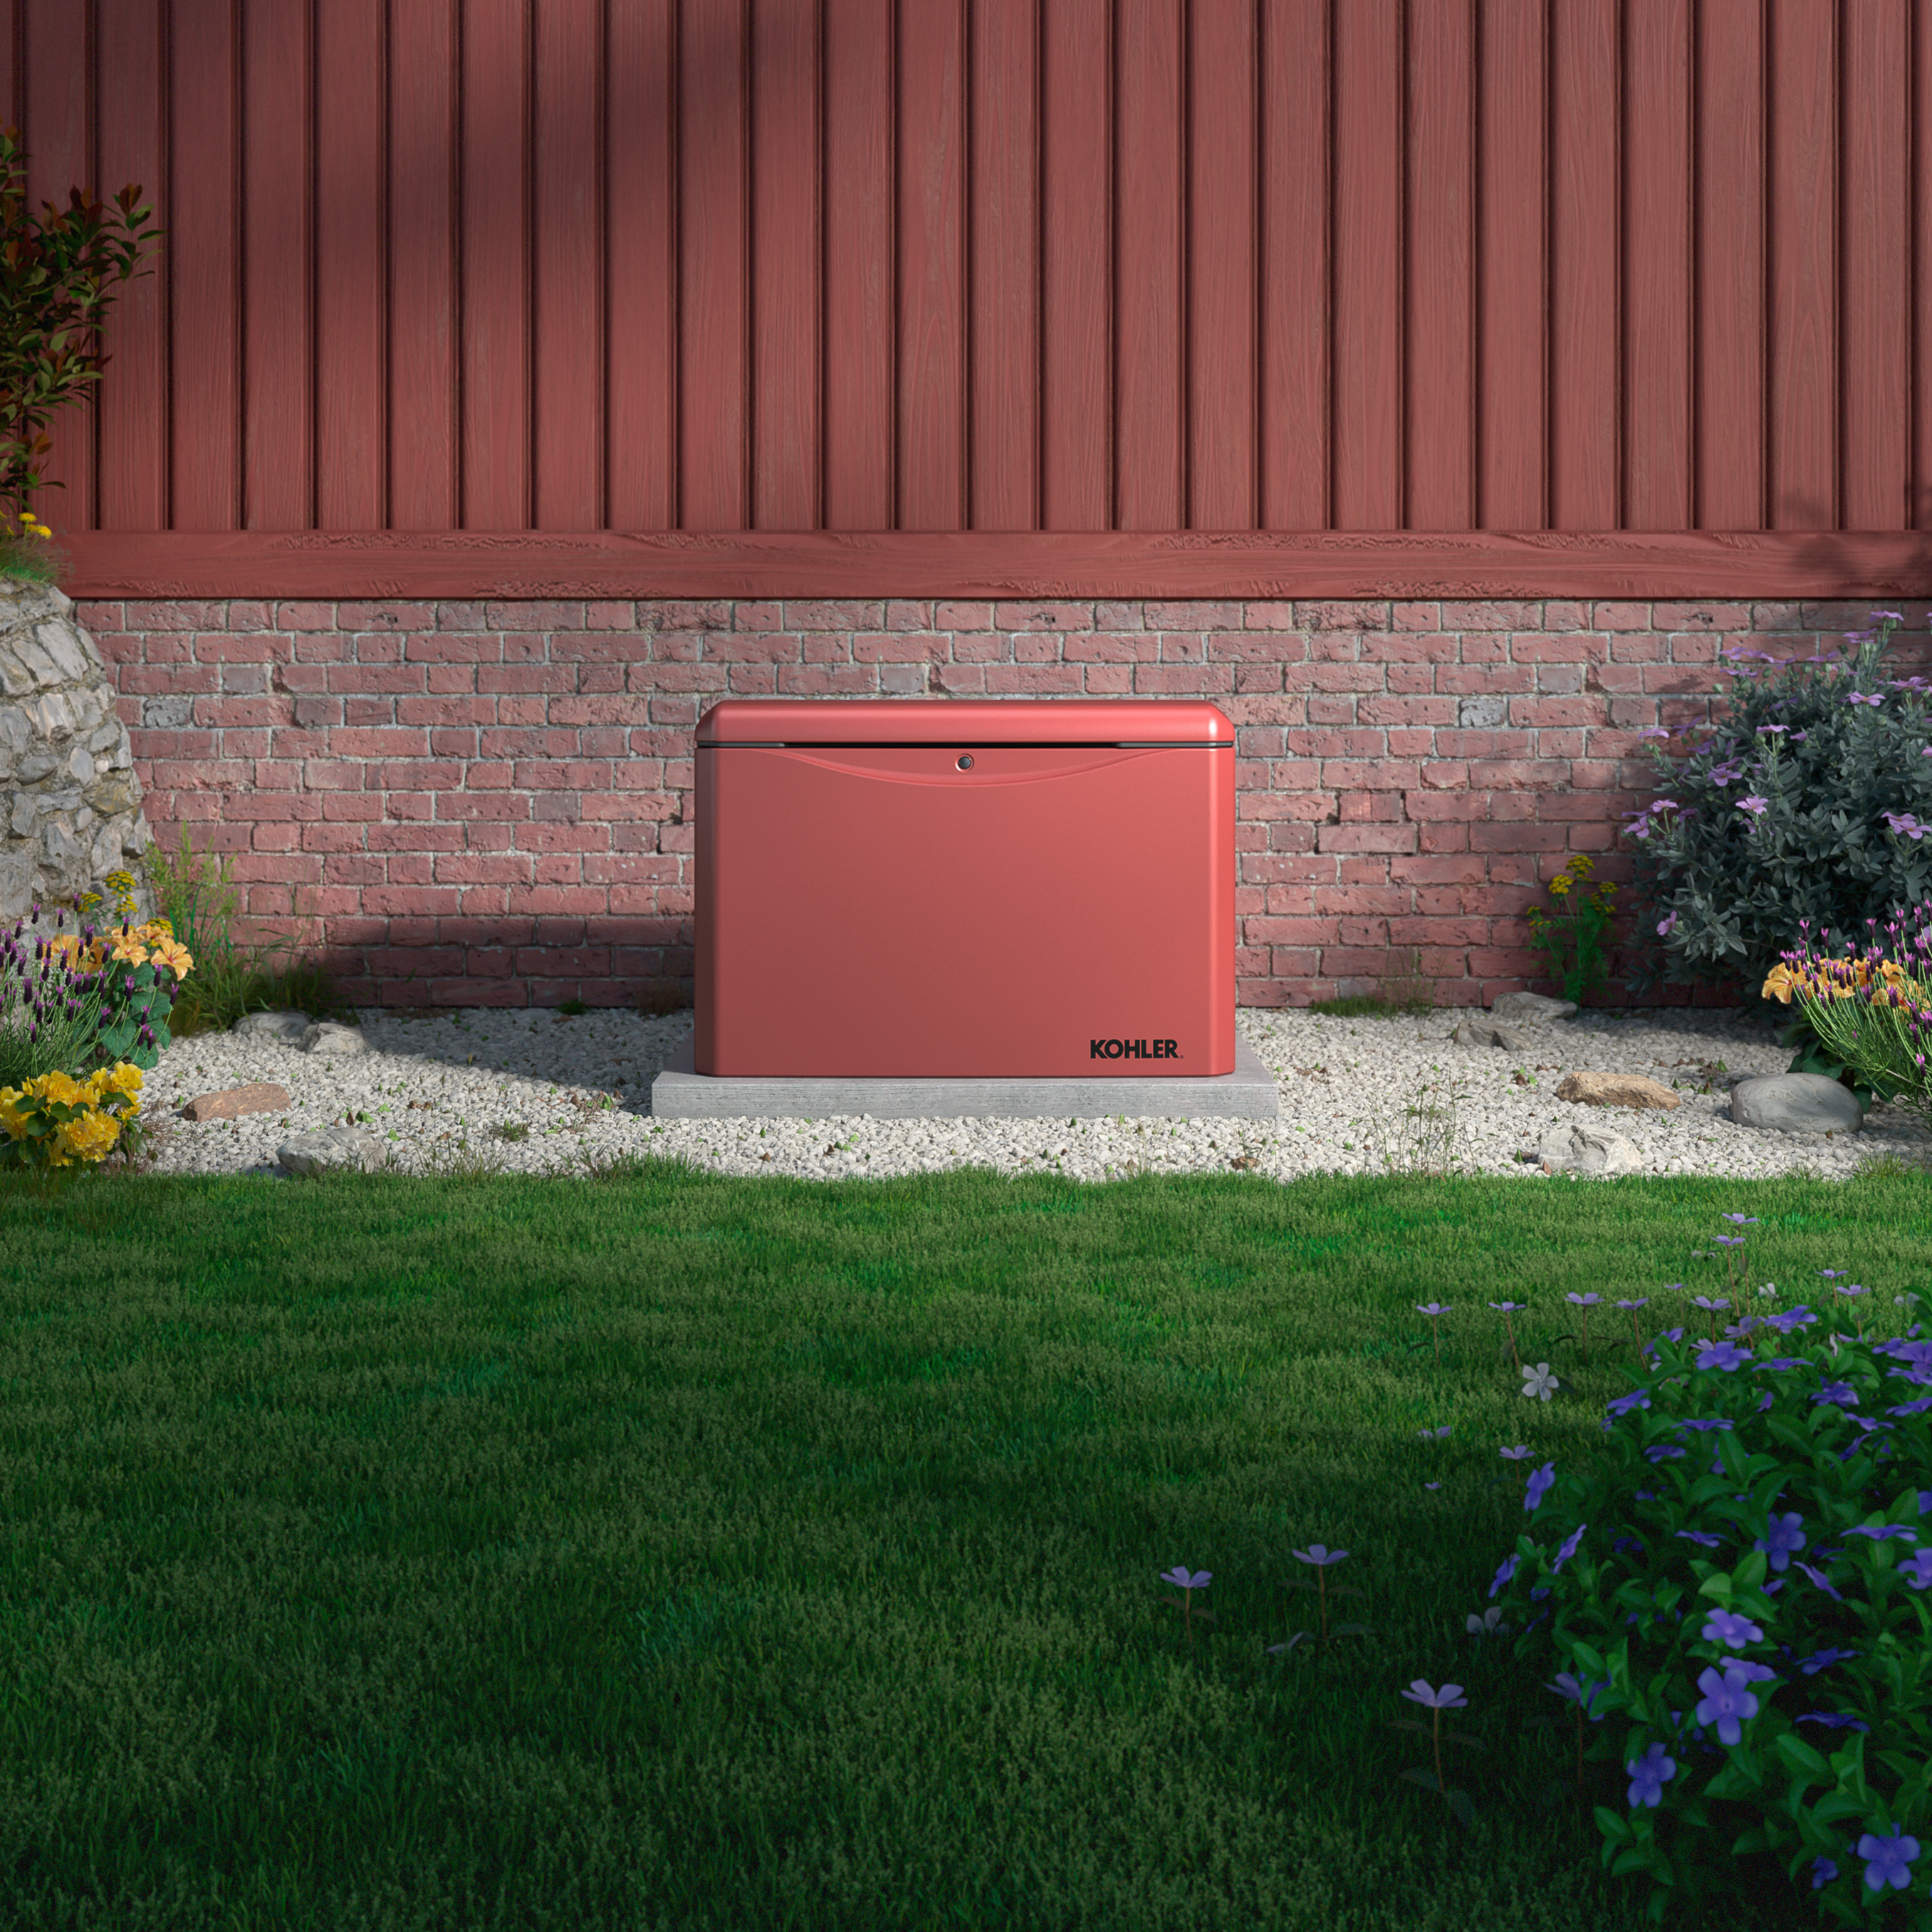 Imagen de un generador para el hogar de Kohler de color ladrillo, que se encuentra junto a un fondo de casa de ladrillo, sobre una base de cemento en un área de piedras, con césped verde, arbustos y flores alrededor